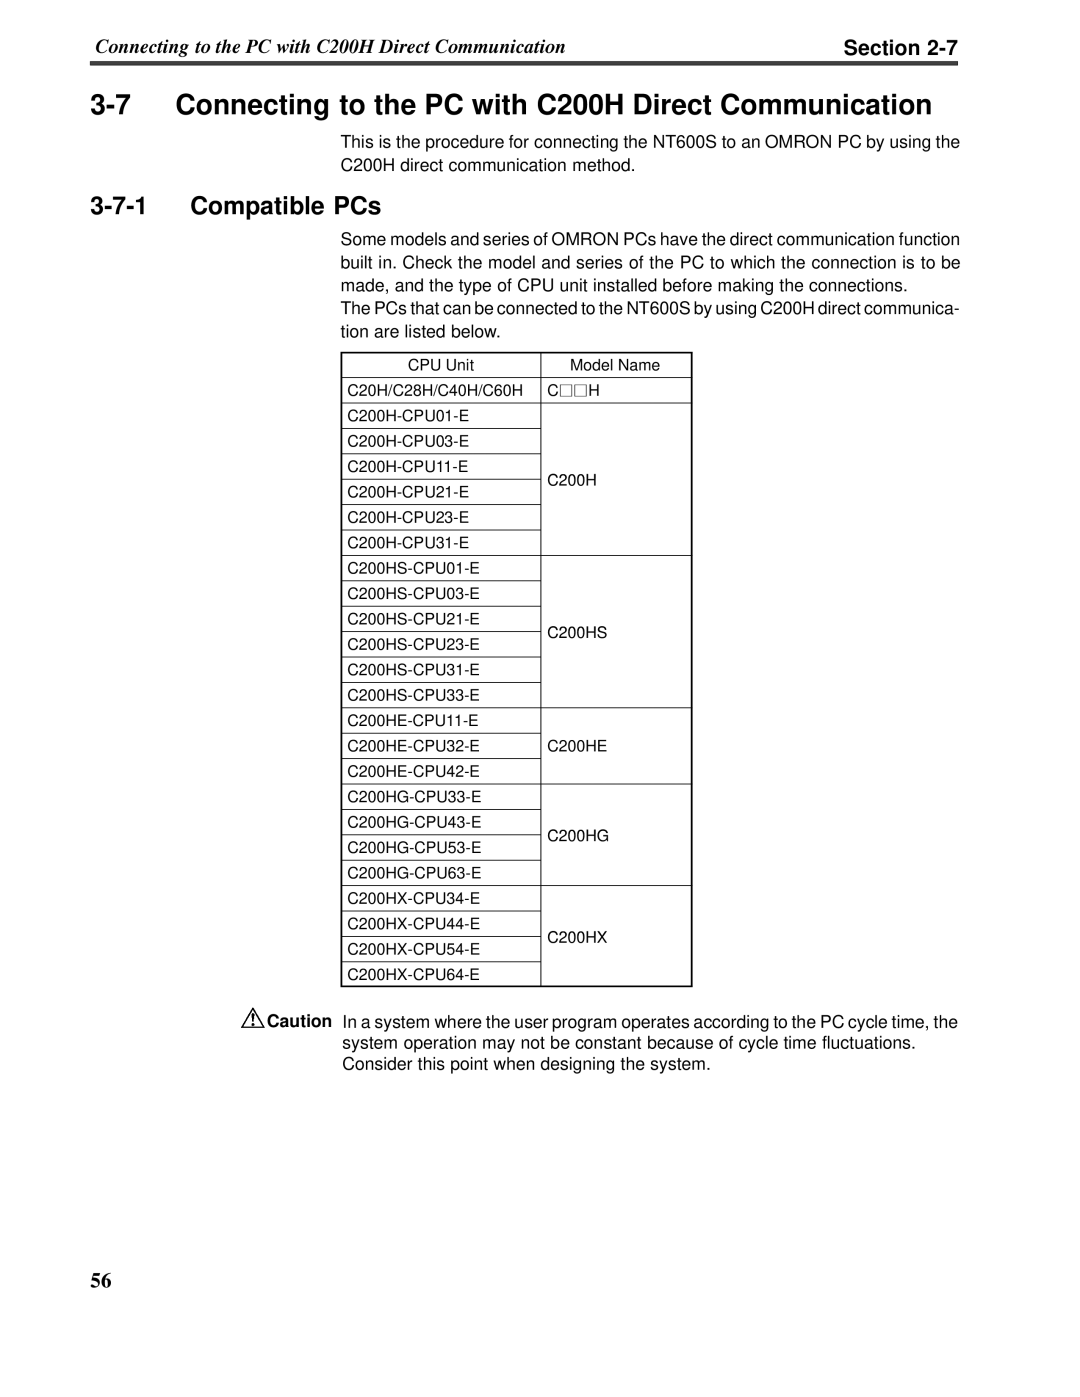 Omron V022-E3-1 operation manual 3-7-1Compatible PCs, Section 